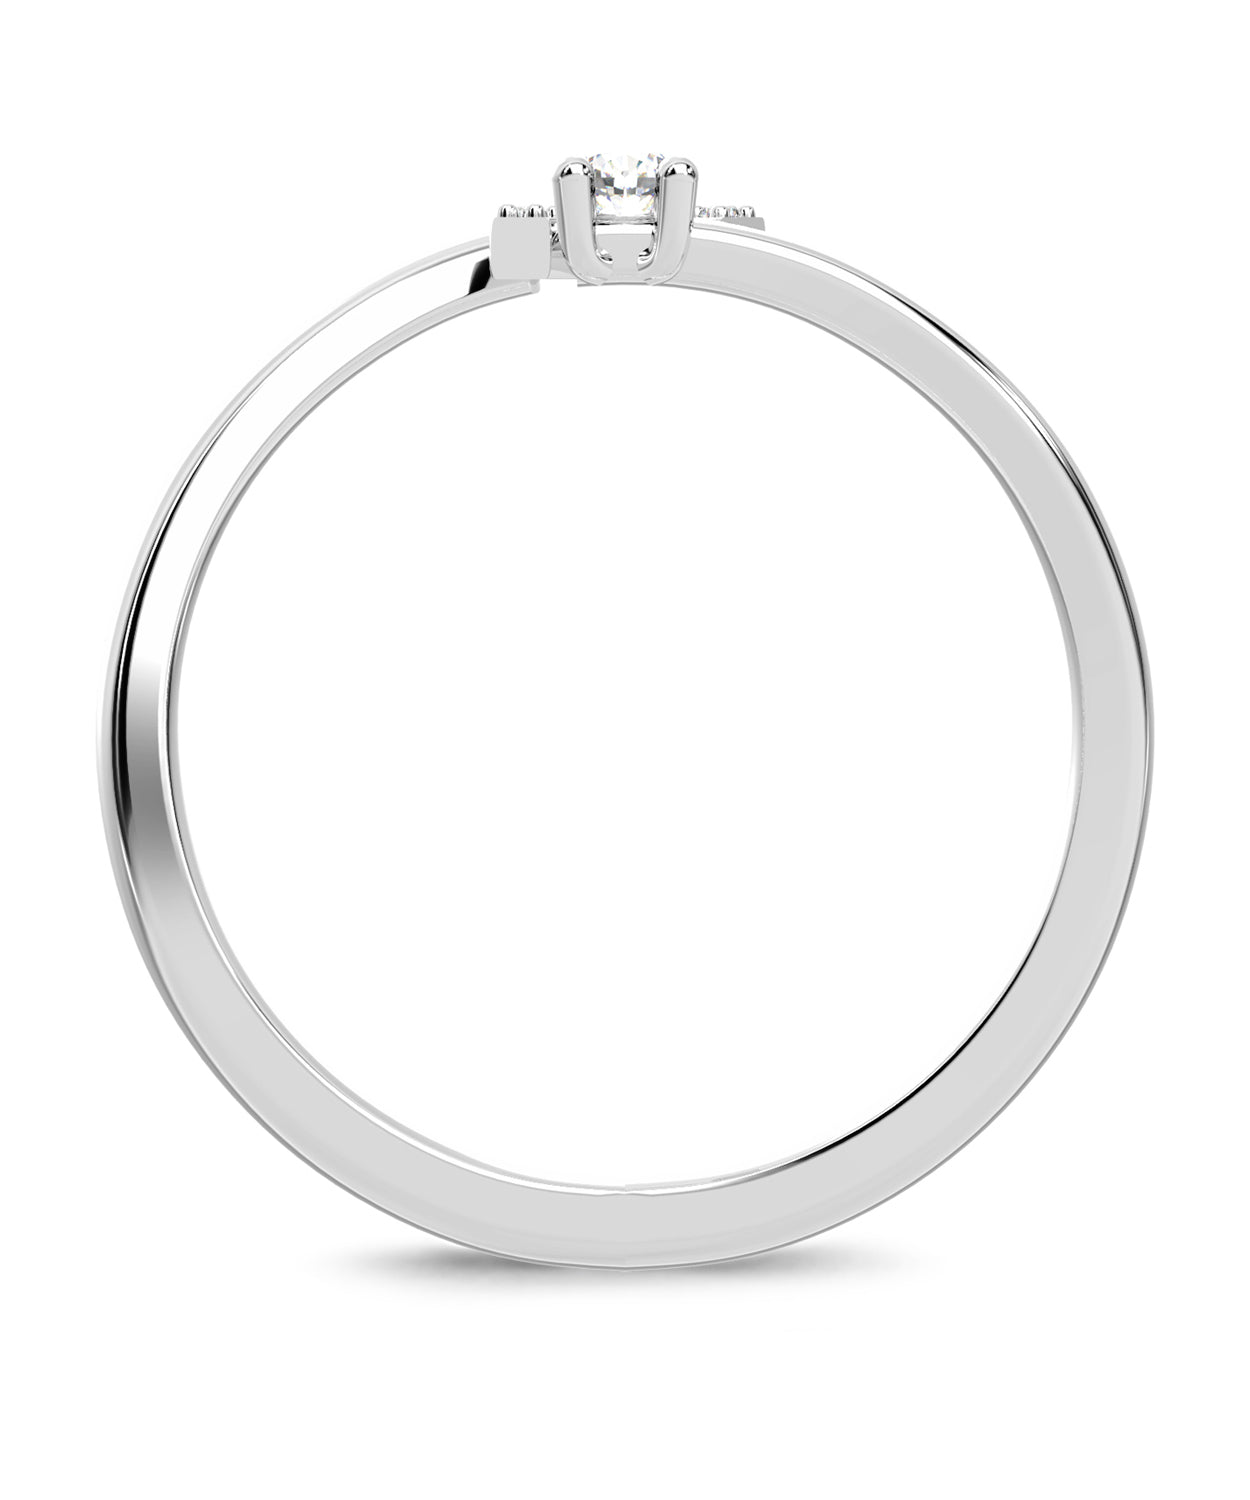 ESEMCO Diamond 18k White Gold Letter K Initial Open Ring View 2